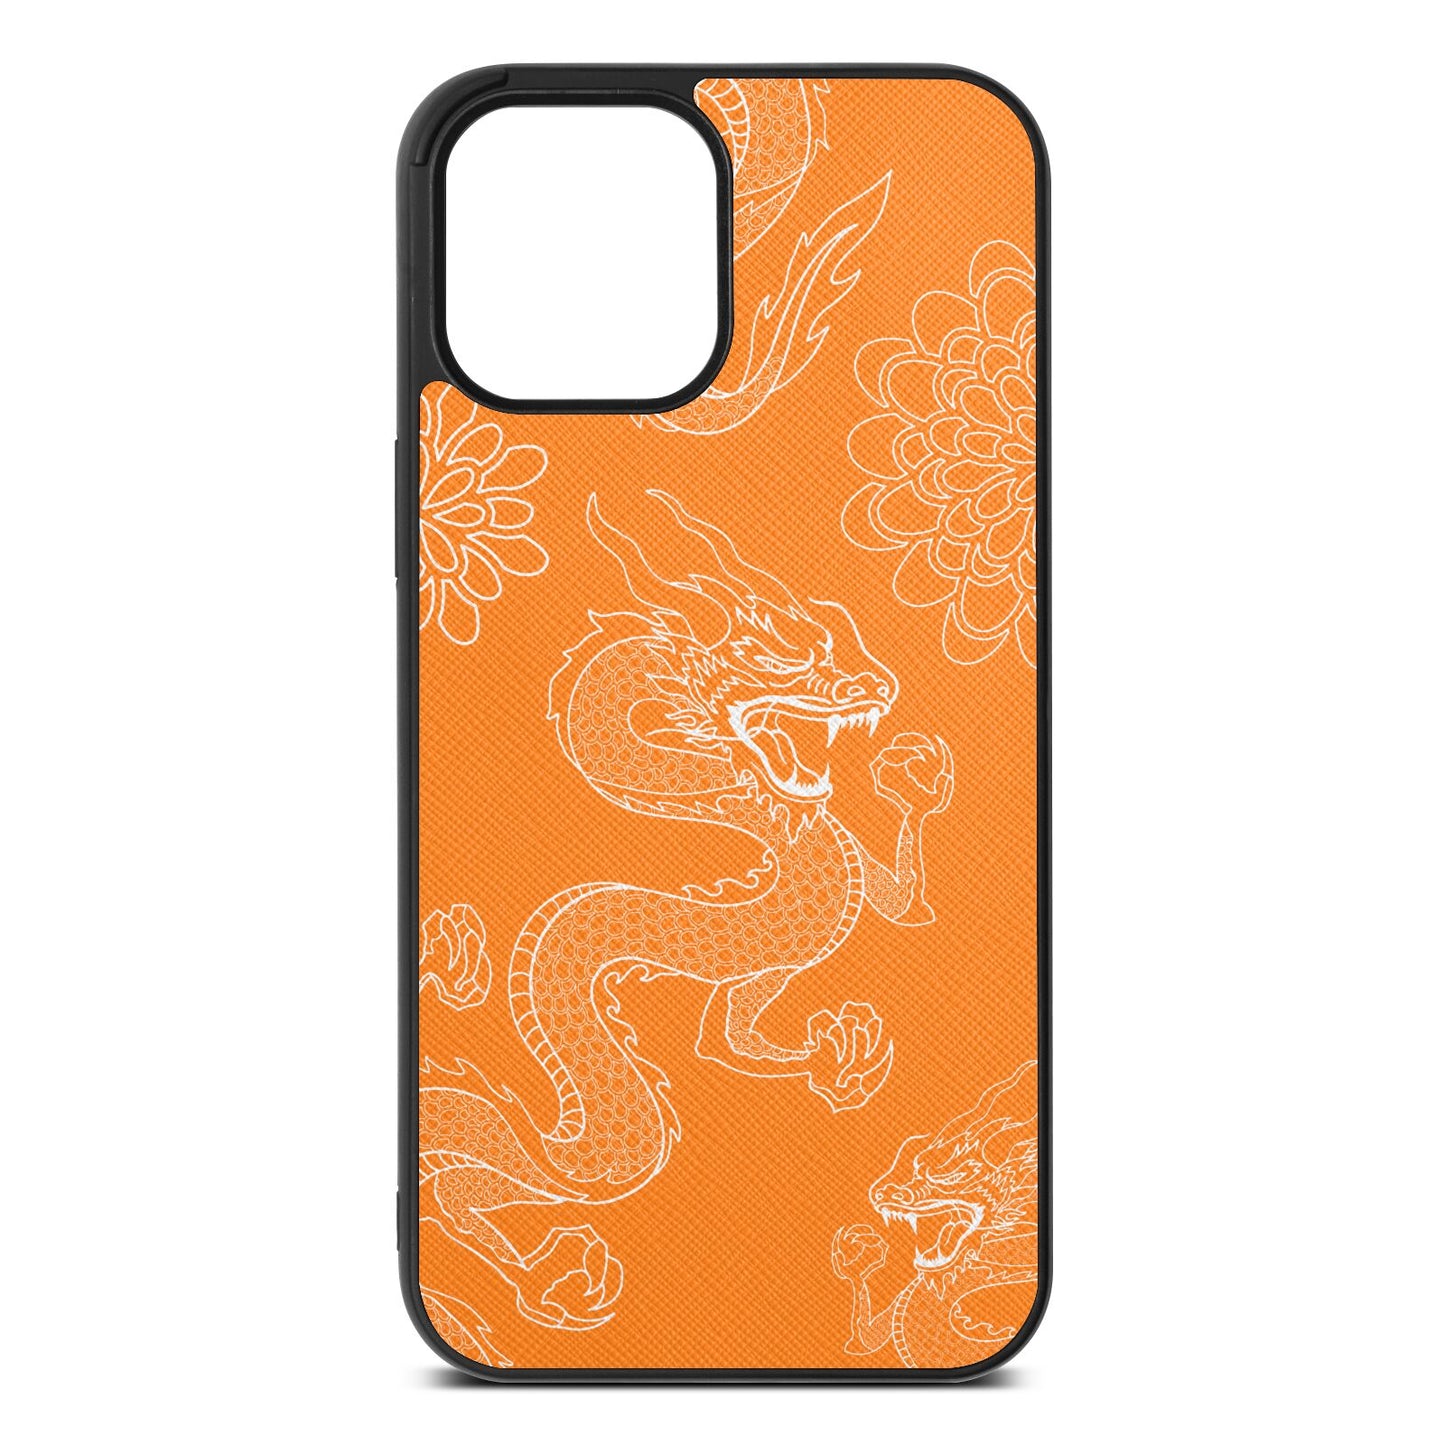 Dragons Saffron Saffiano Leather iPhone 12 Pro Max Case